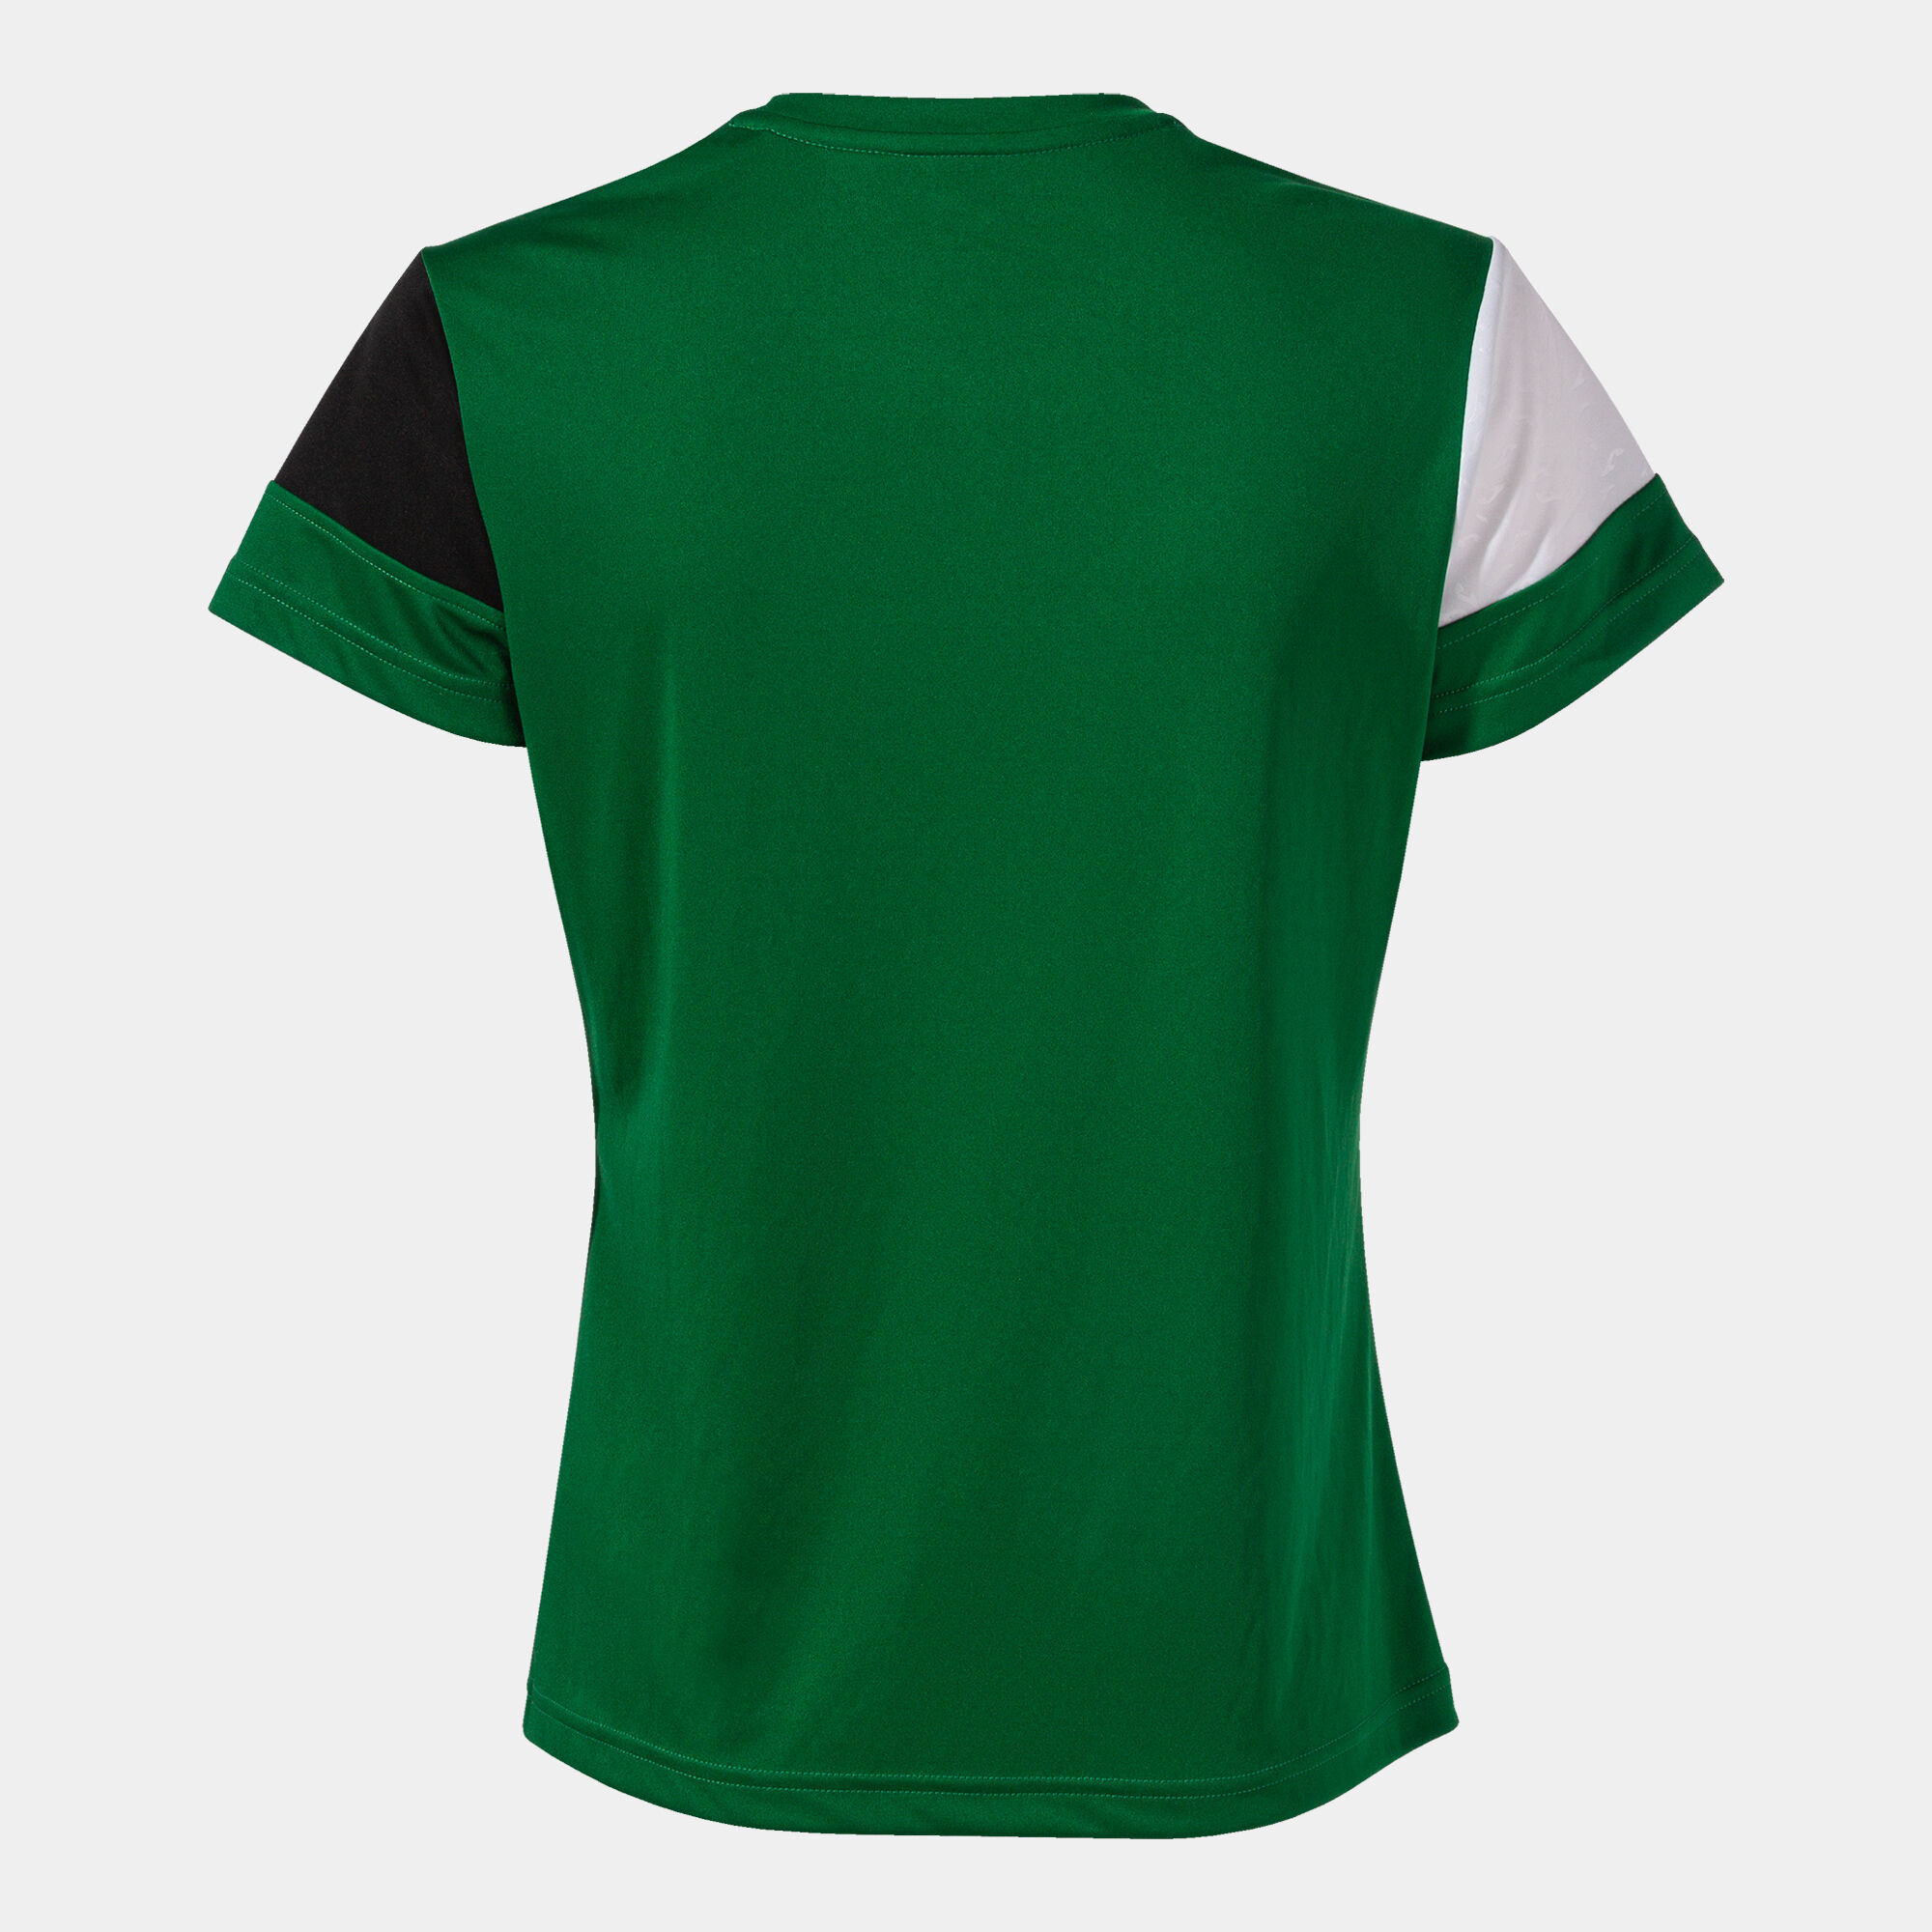 Camiseta manga corta mujer Crew V verde negro blanco